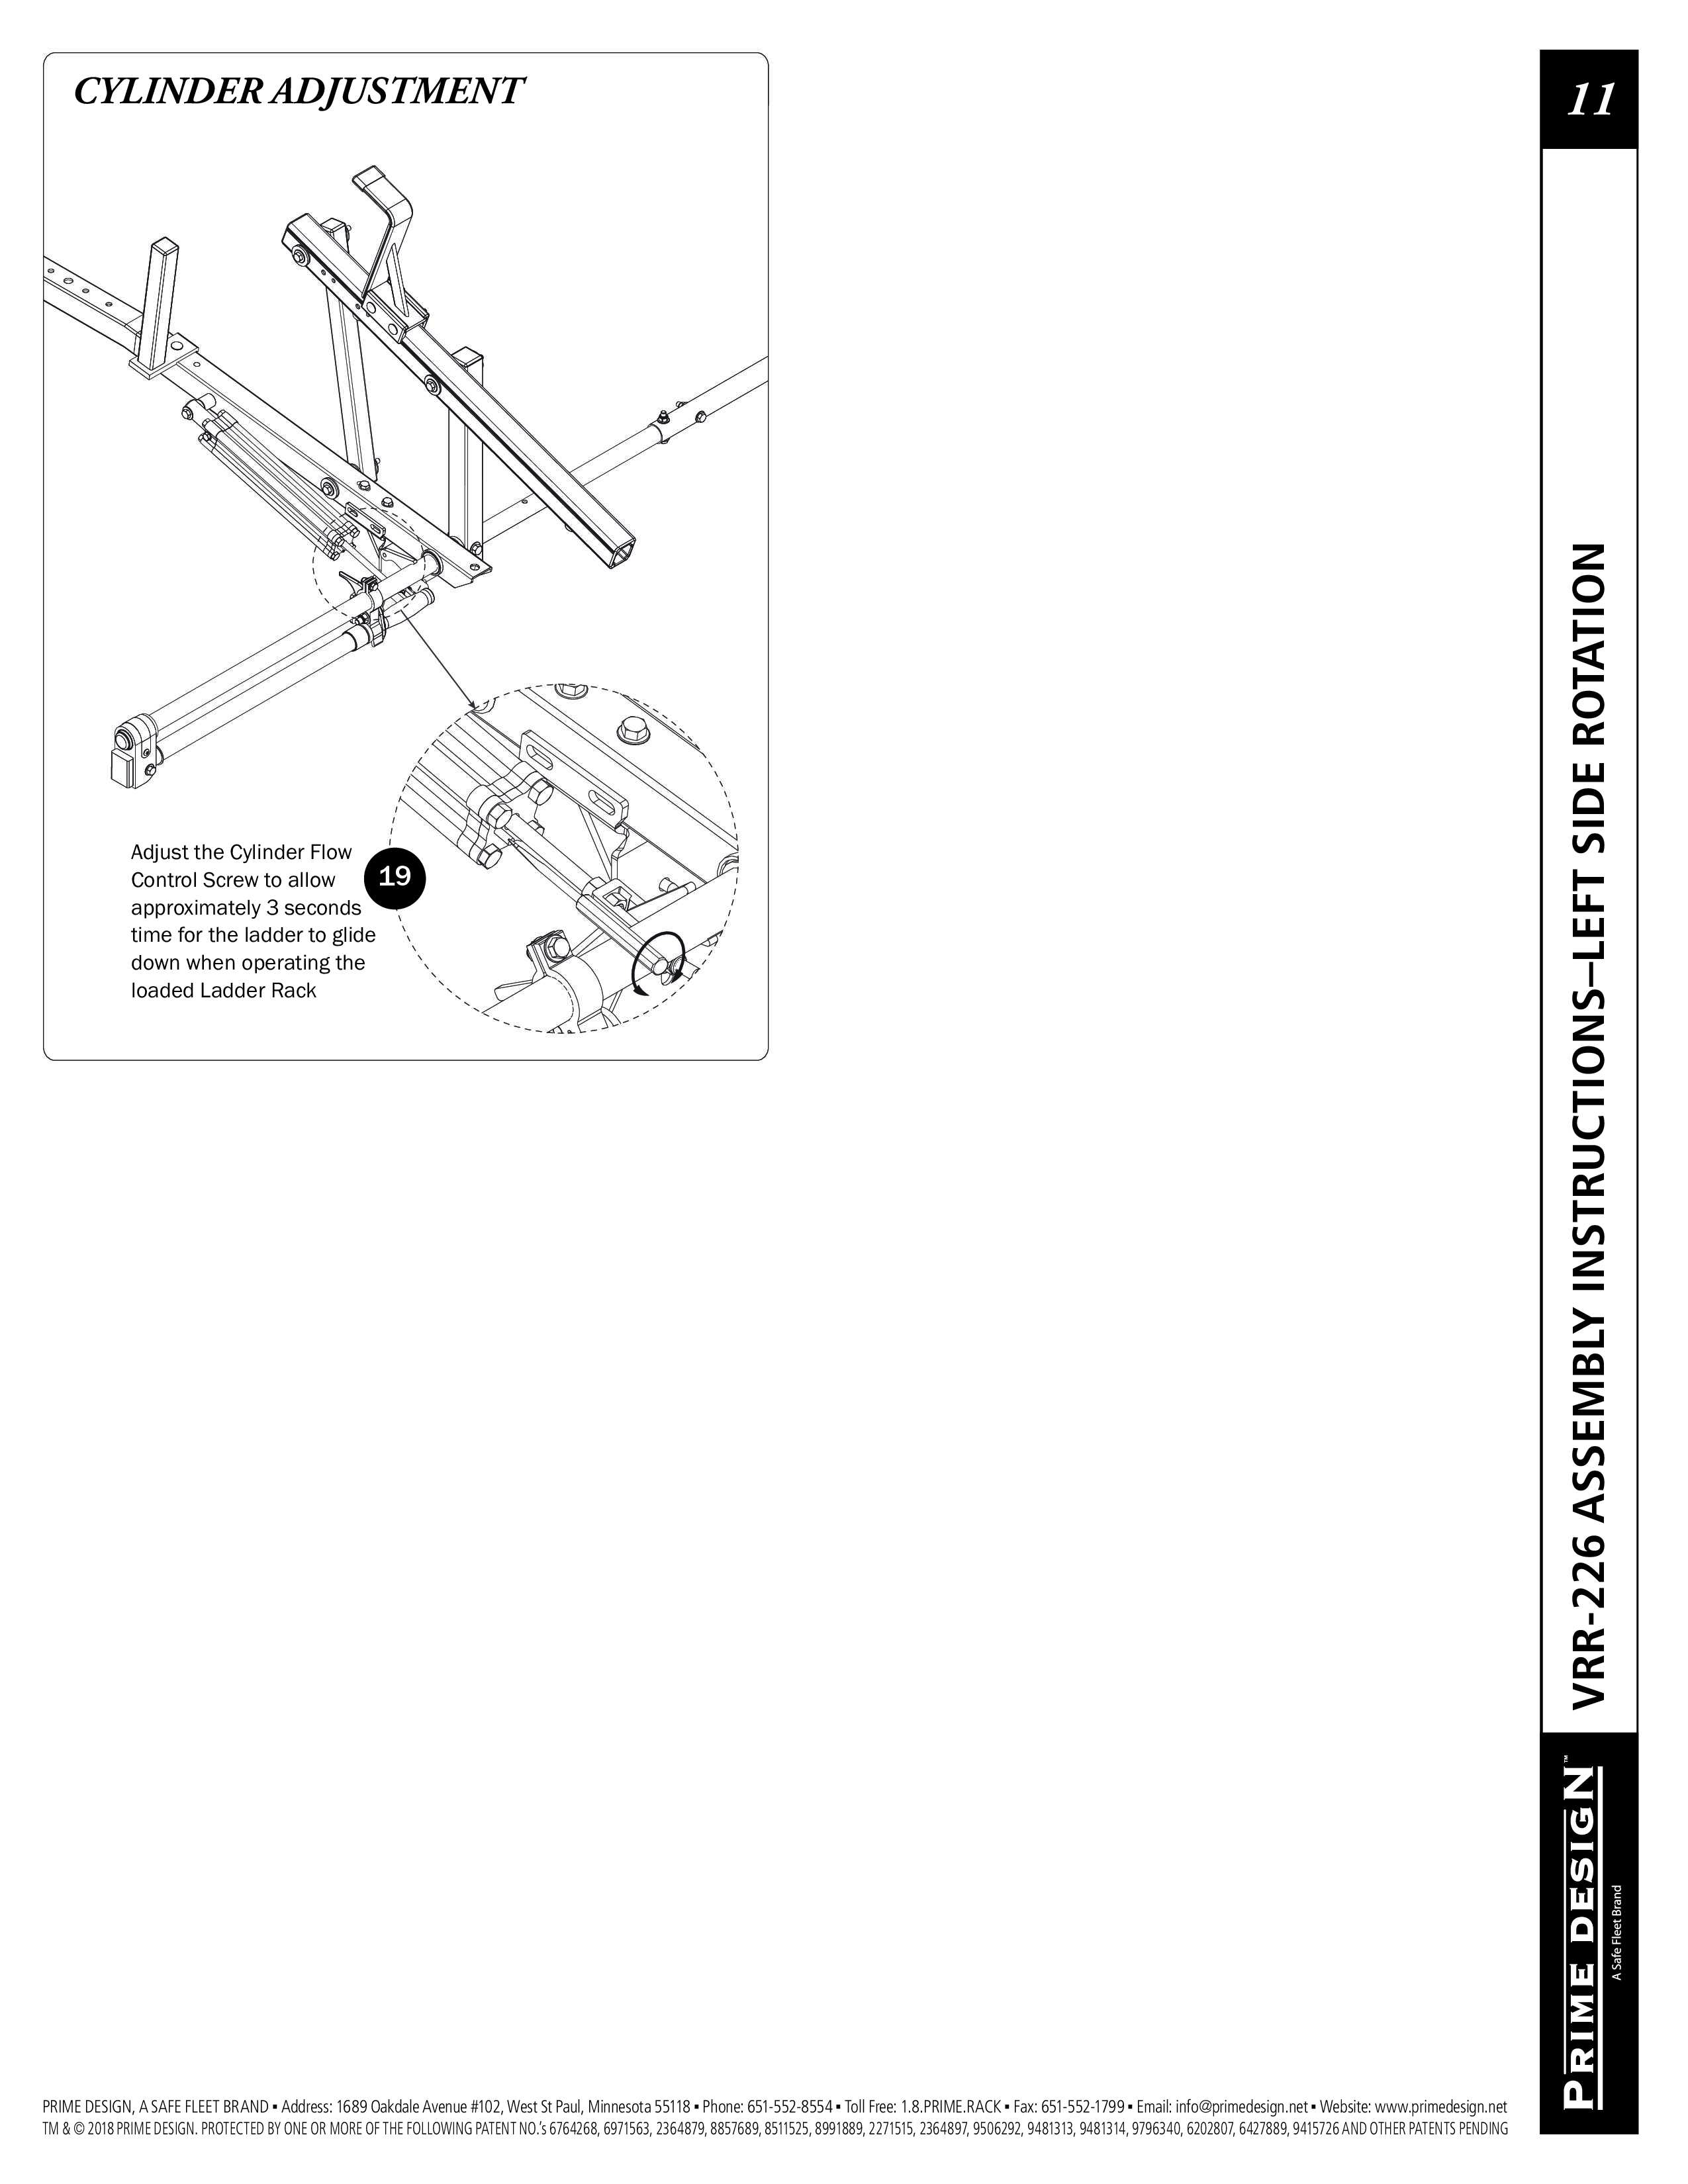 Prime Design VRR-216 ErgoRack Ladder Rack Installation Manual - Ladder ...